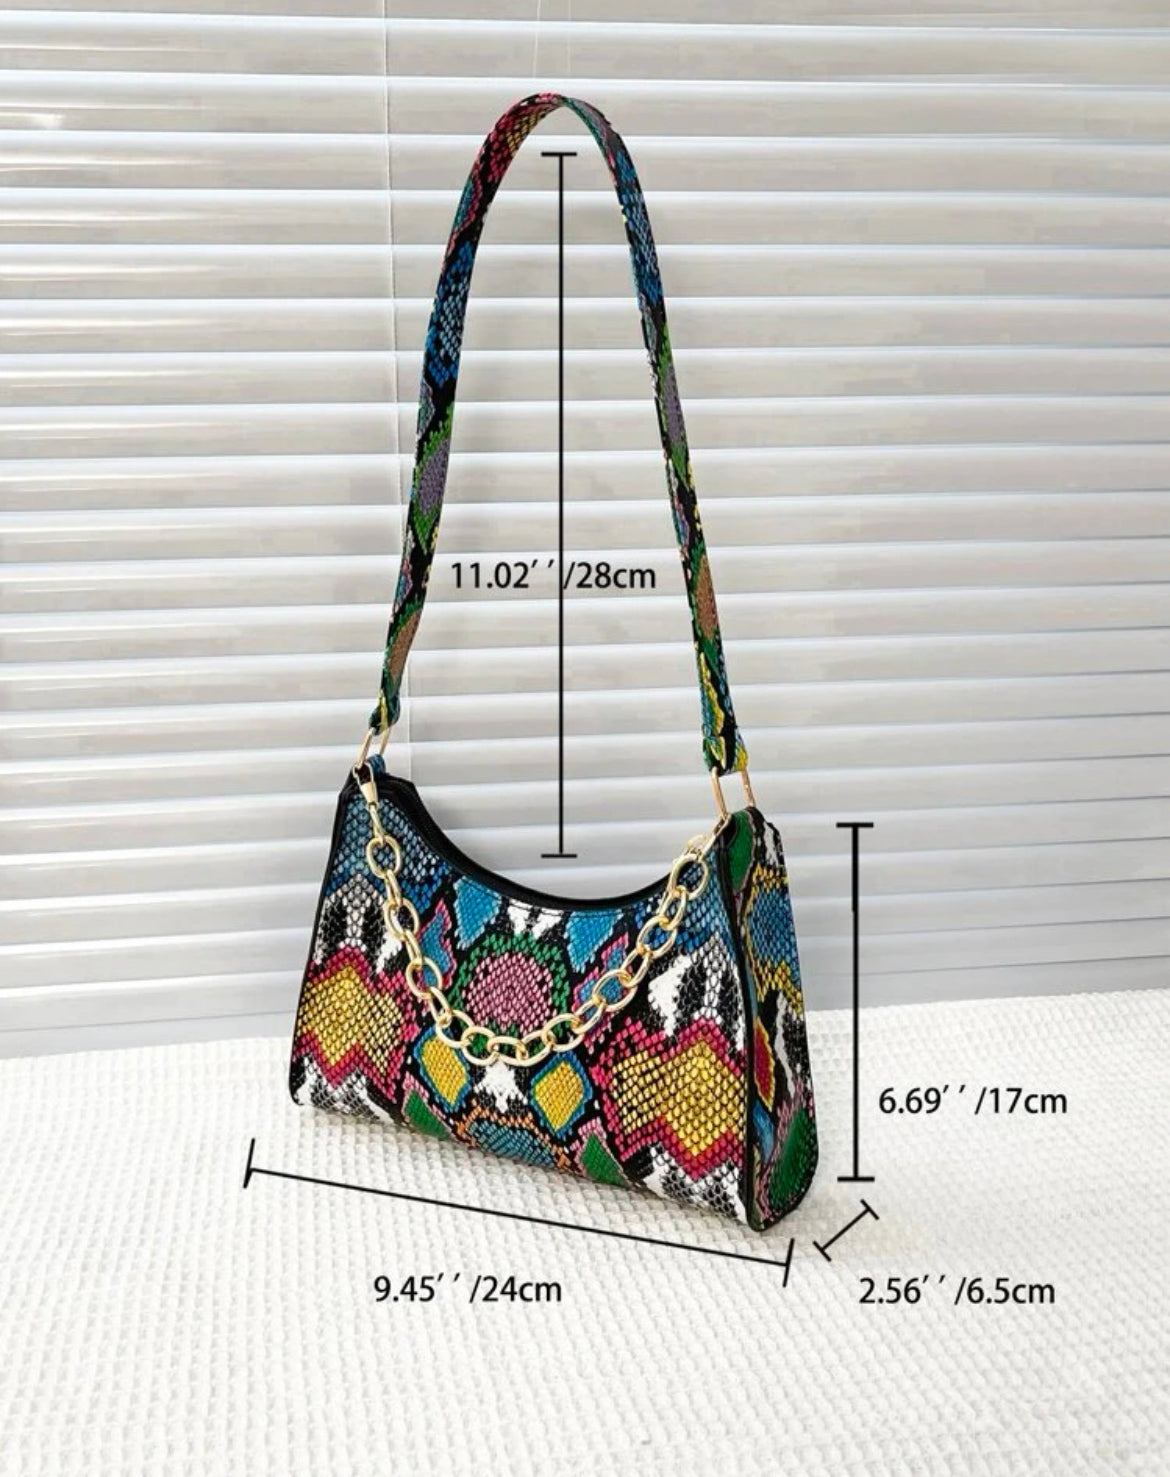 Styling & Profiling Handbag